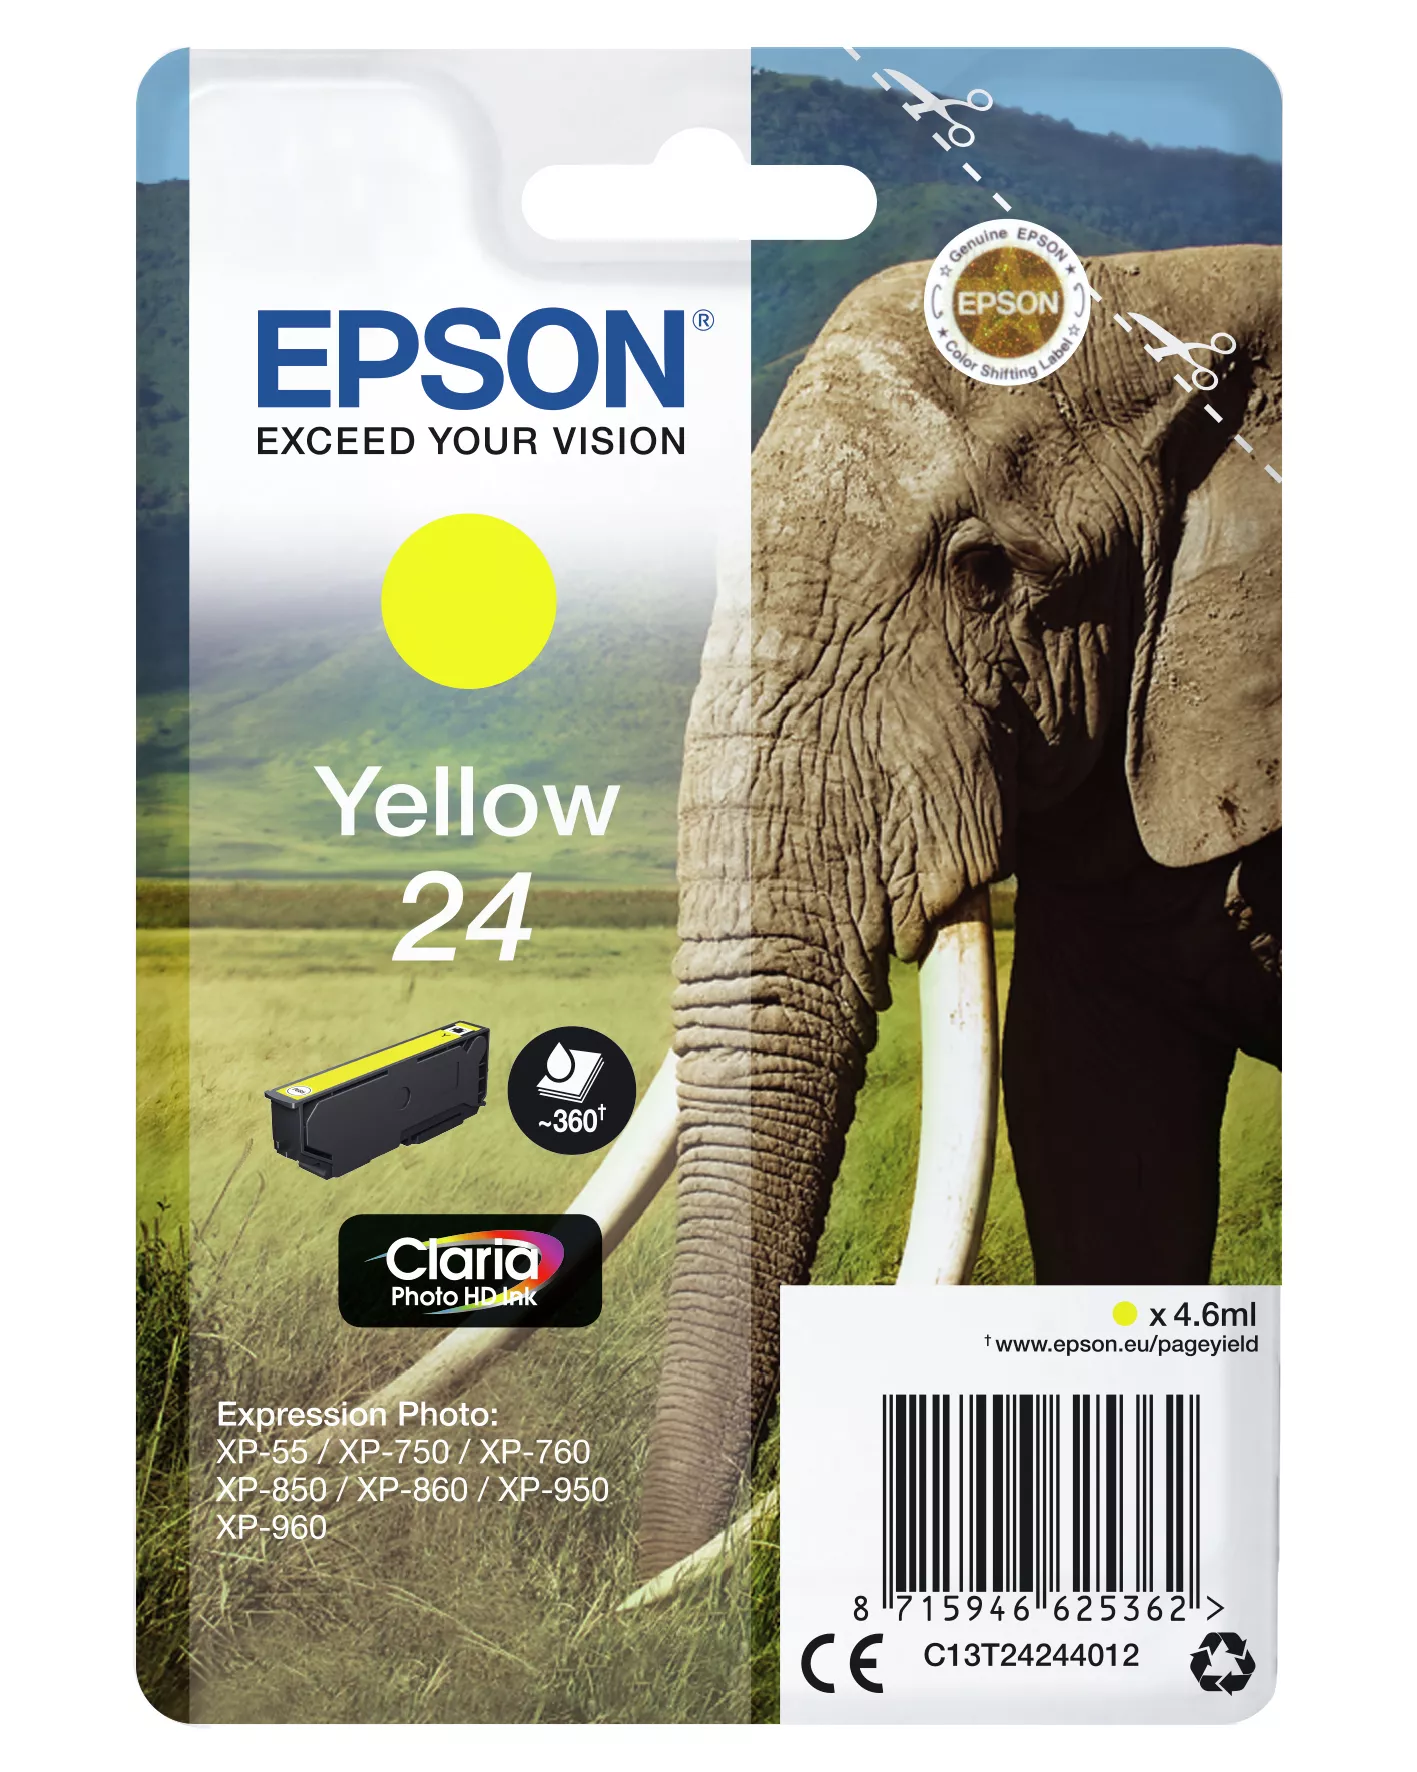 Achat EPSON 24 cartouche encre jaune capacité standard 4.6ml sur hello RSE - visuel 3